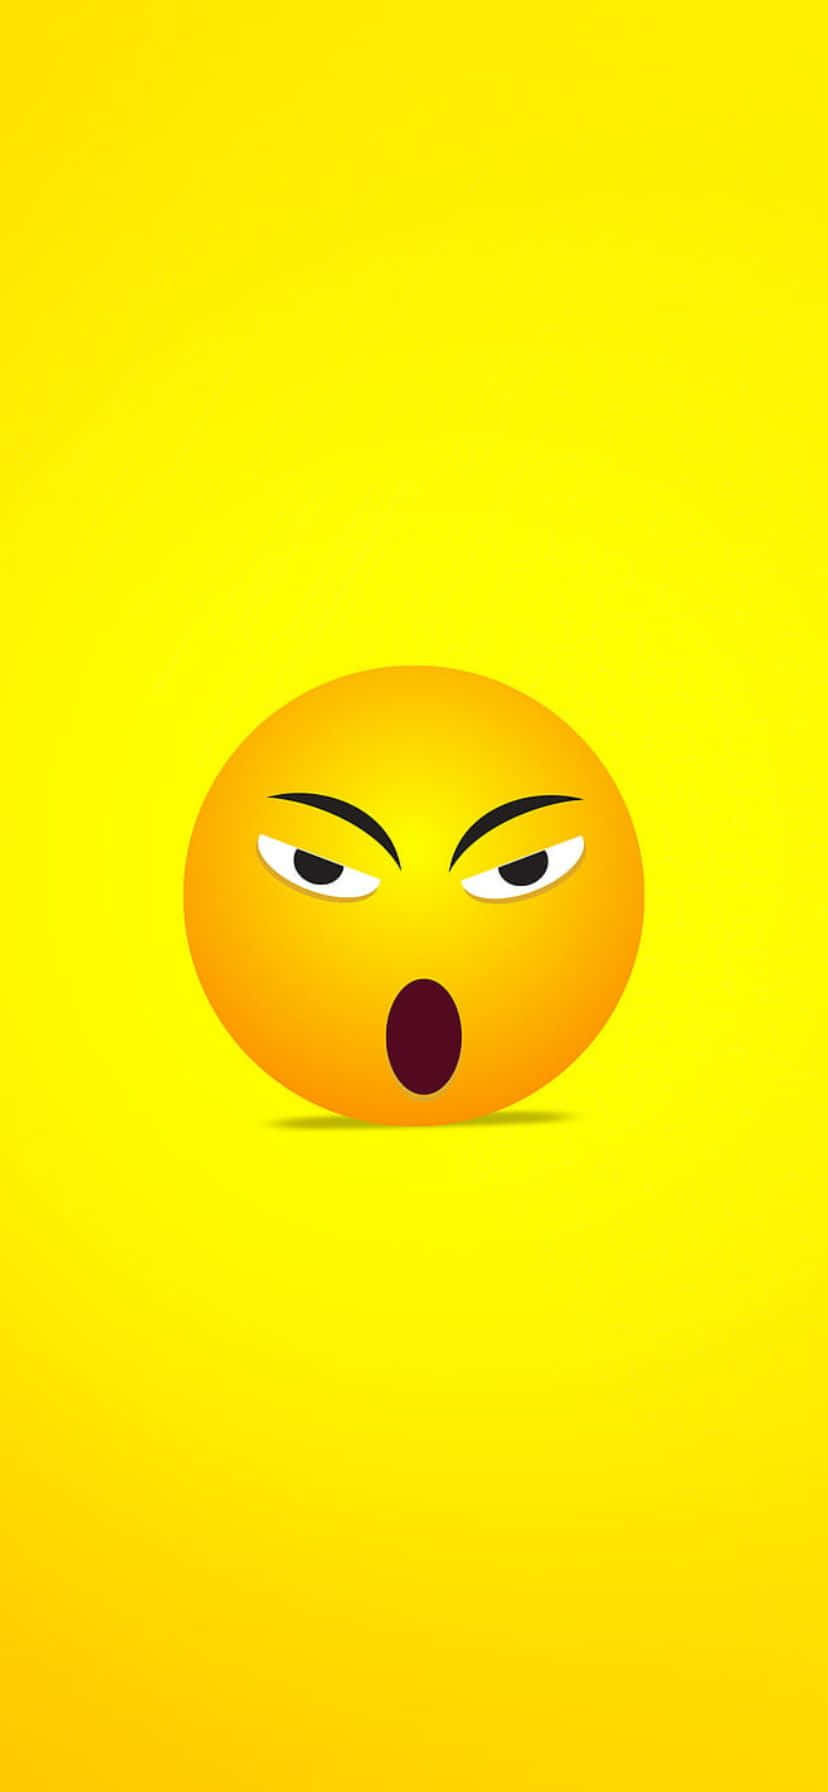 Angry Emoji Yellow Background.jpg Wallpaper